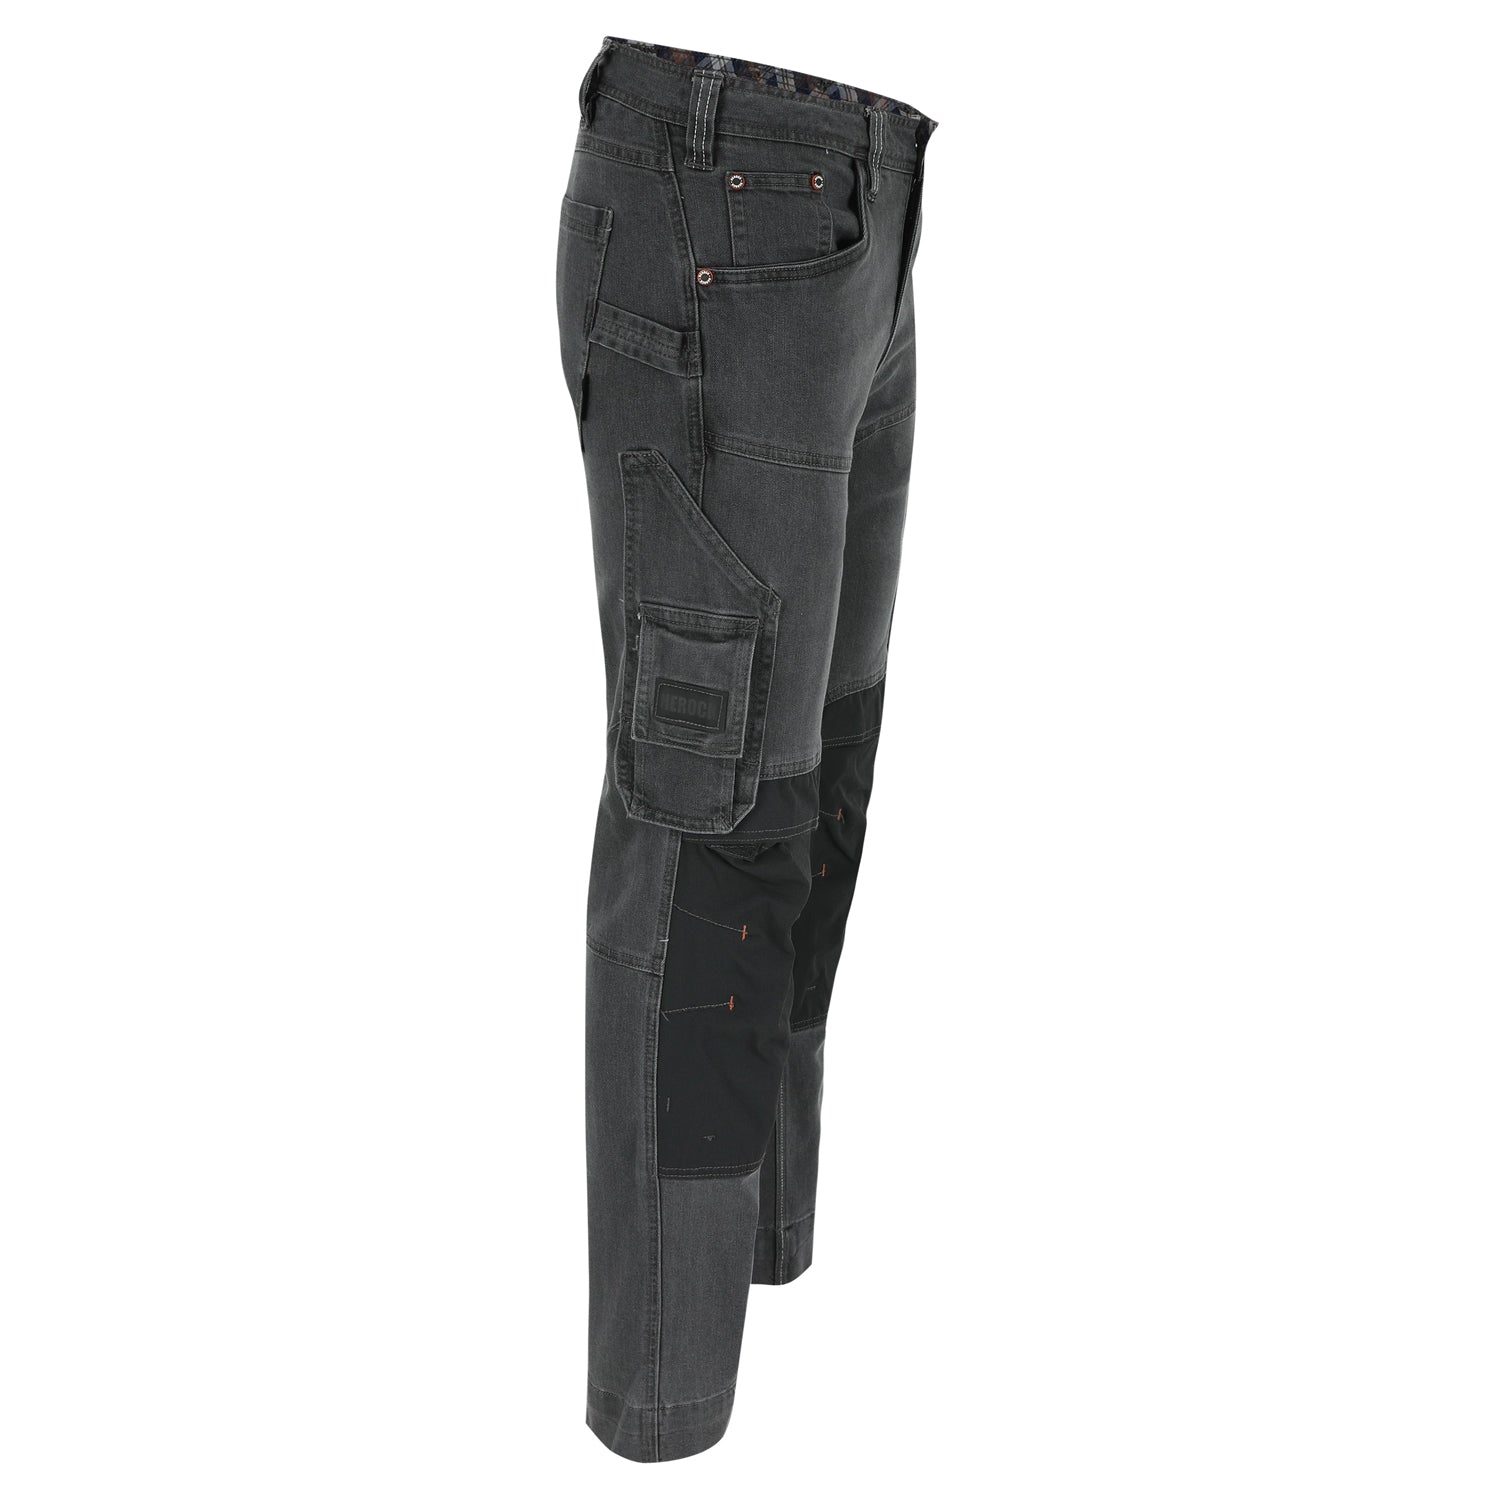 Herock Sphinx Stretch jeansbroek in de kleur jeans grijs